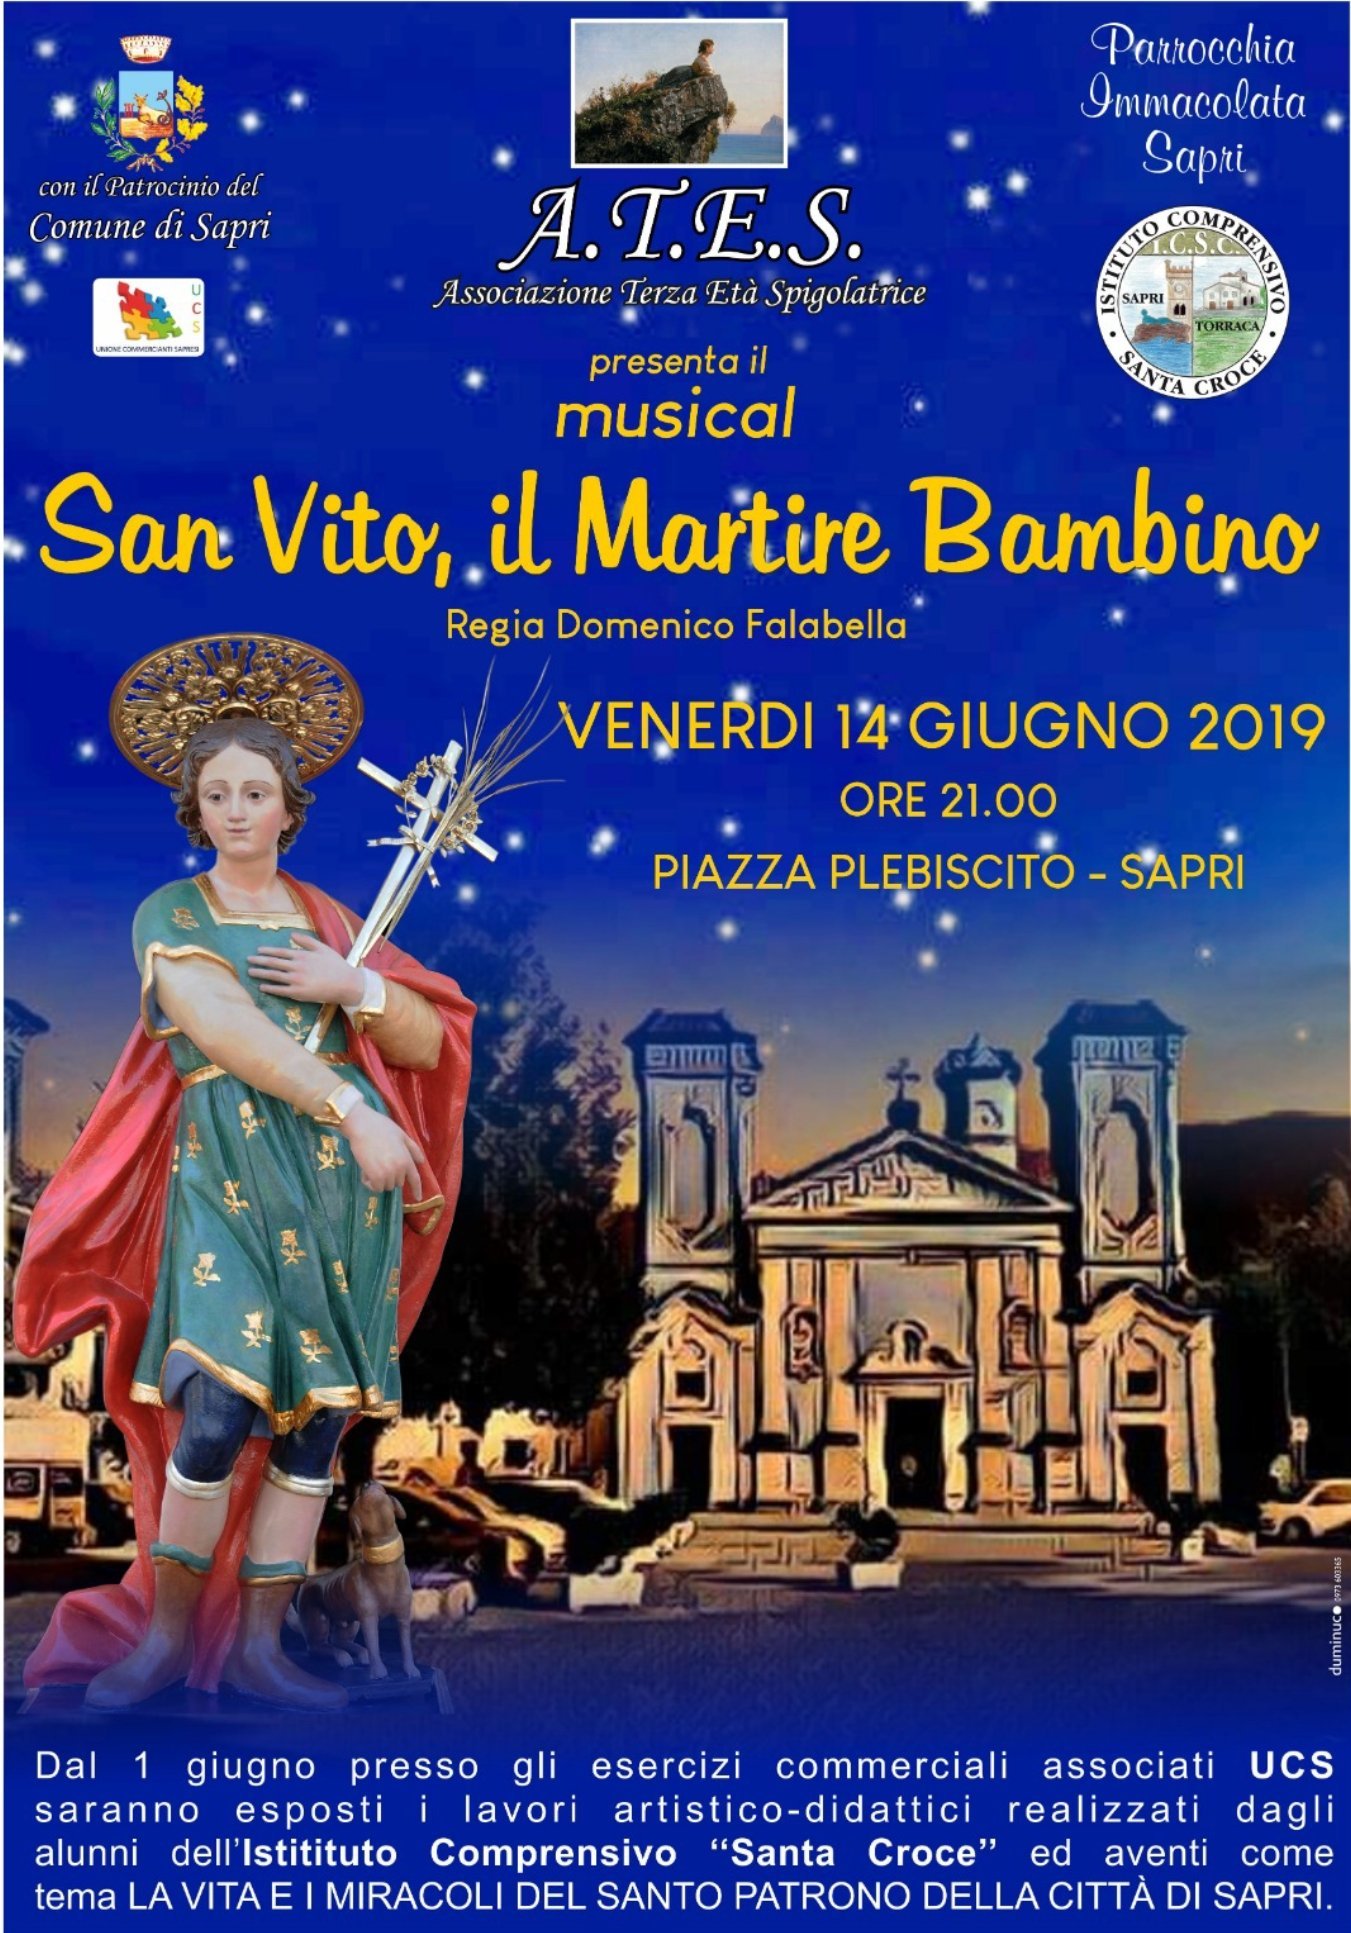 ‘San Vito, il Martire Bambino’: musical dell’Associazione Terza Età Spigolatrice a Sapri